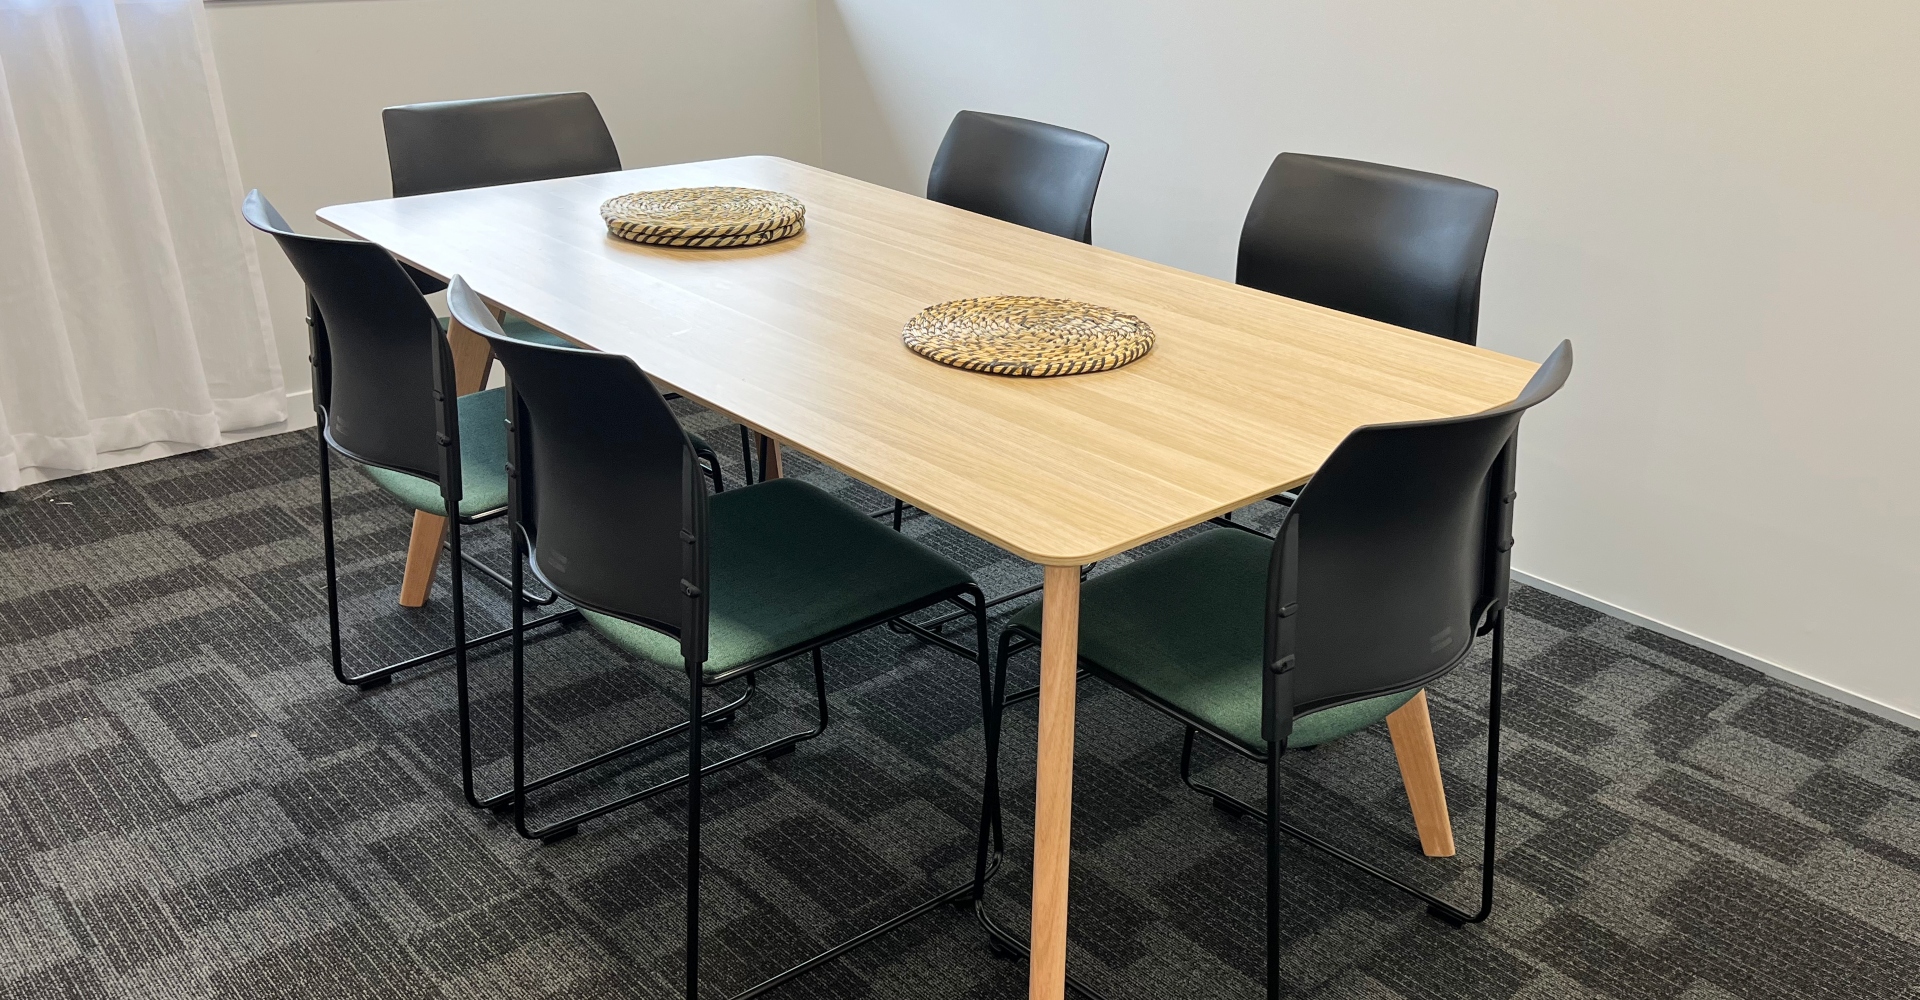 CW-Meeting-Room-Table-Chair-setup